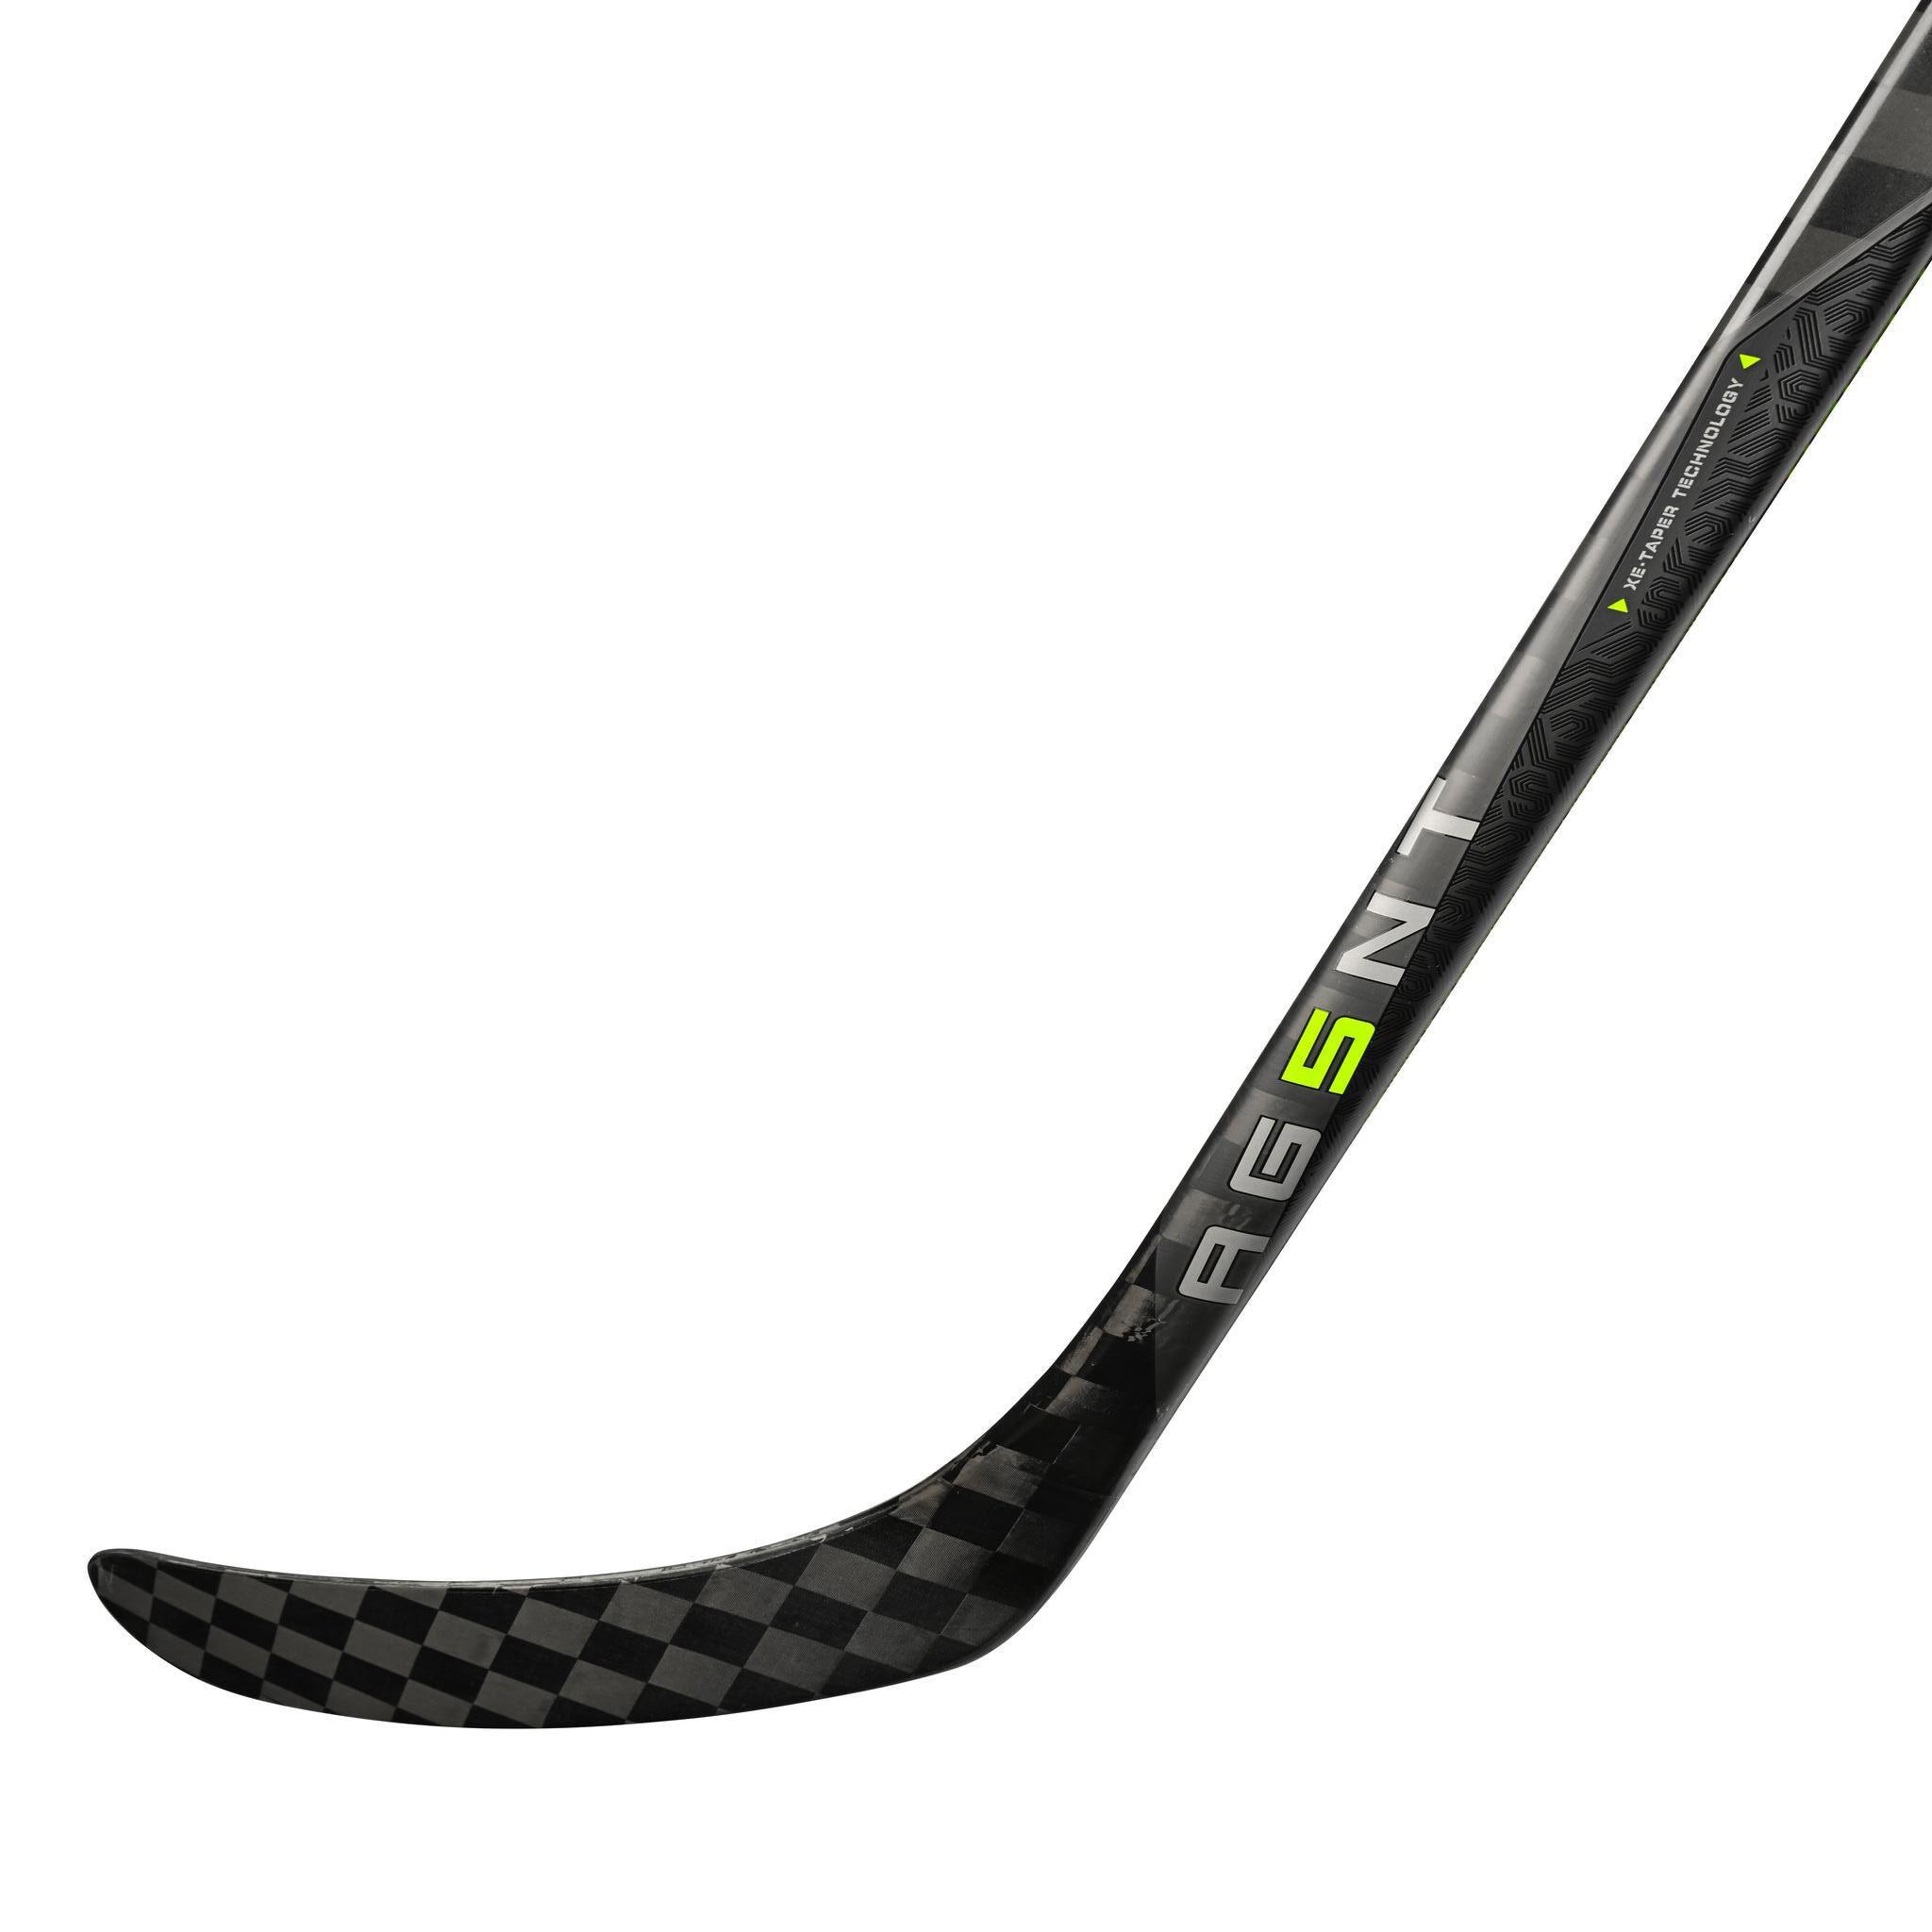 Hockey stick graph - Wikipedia